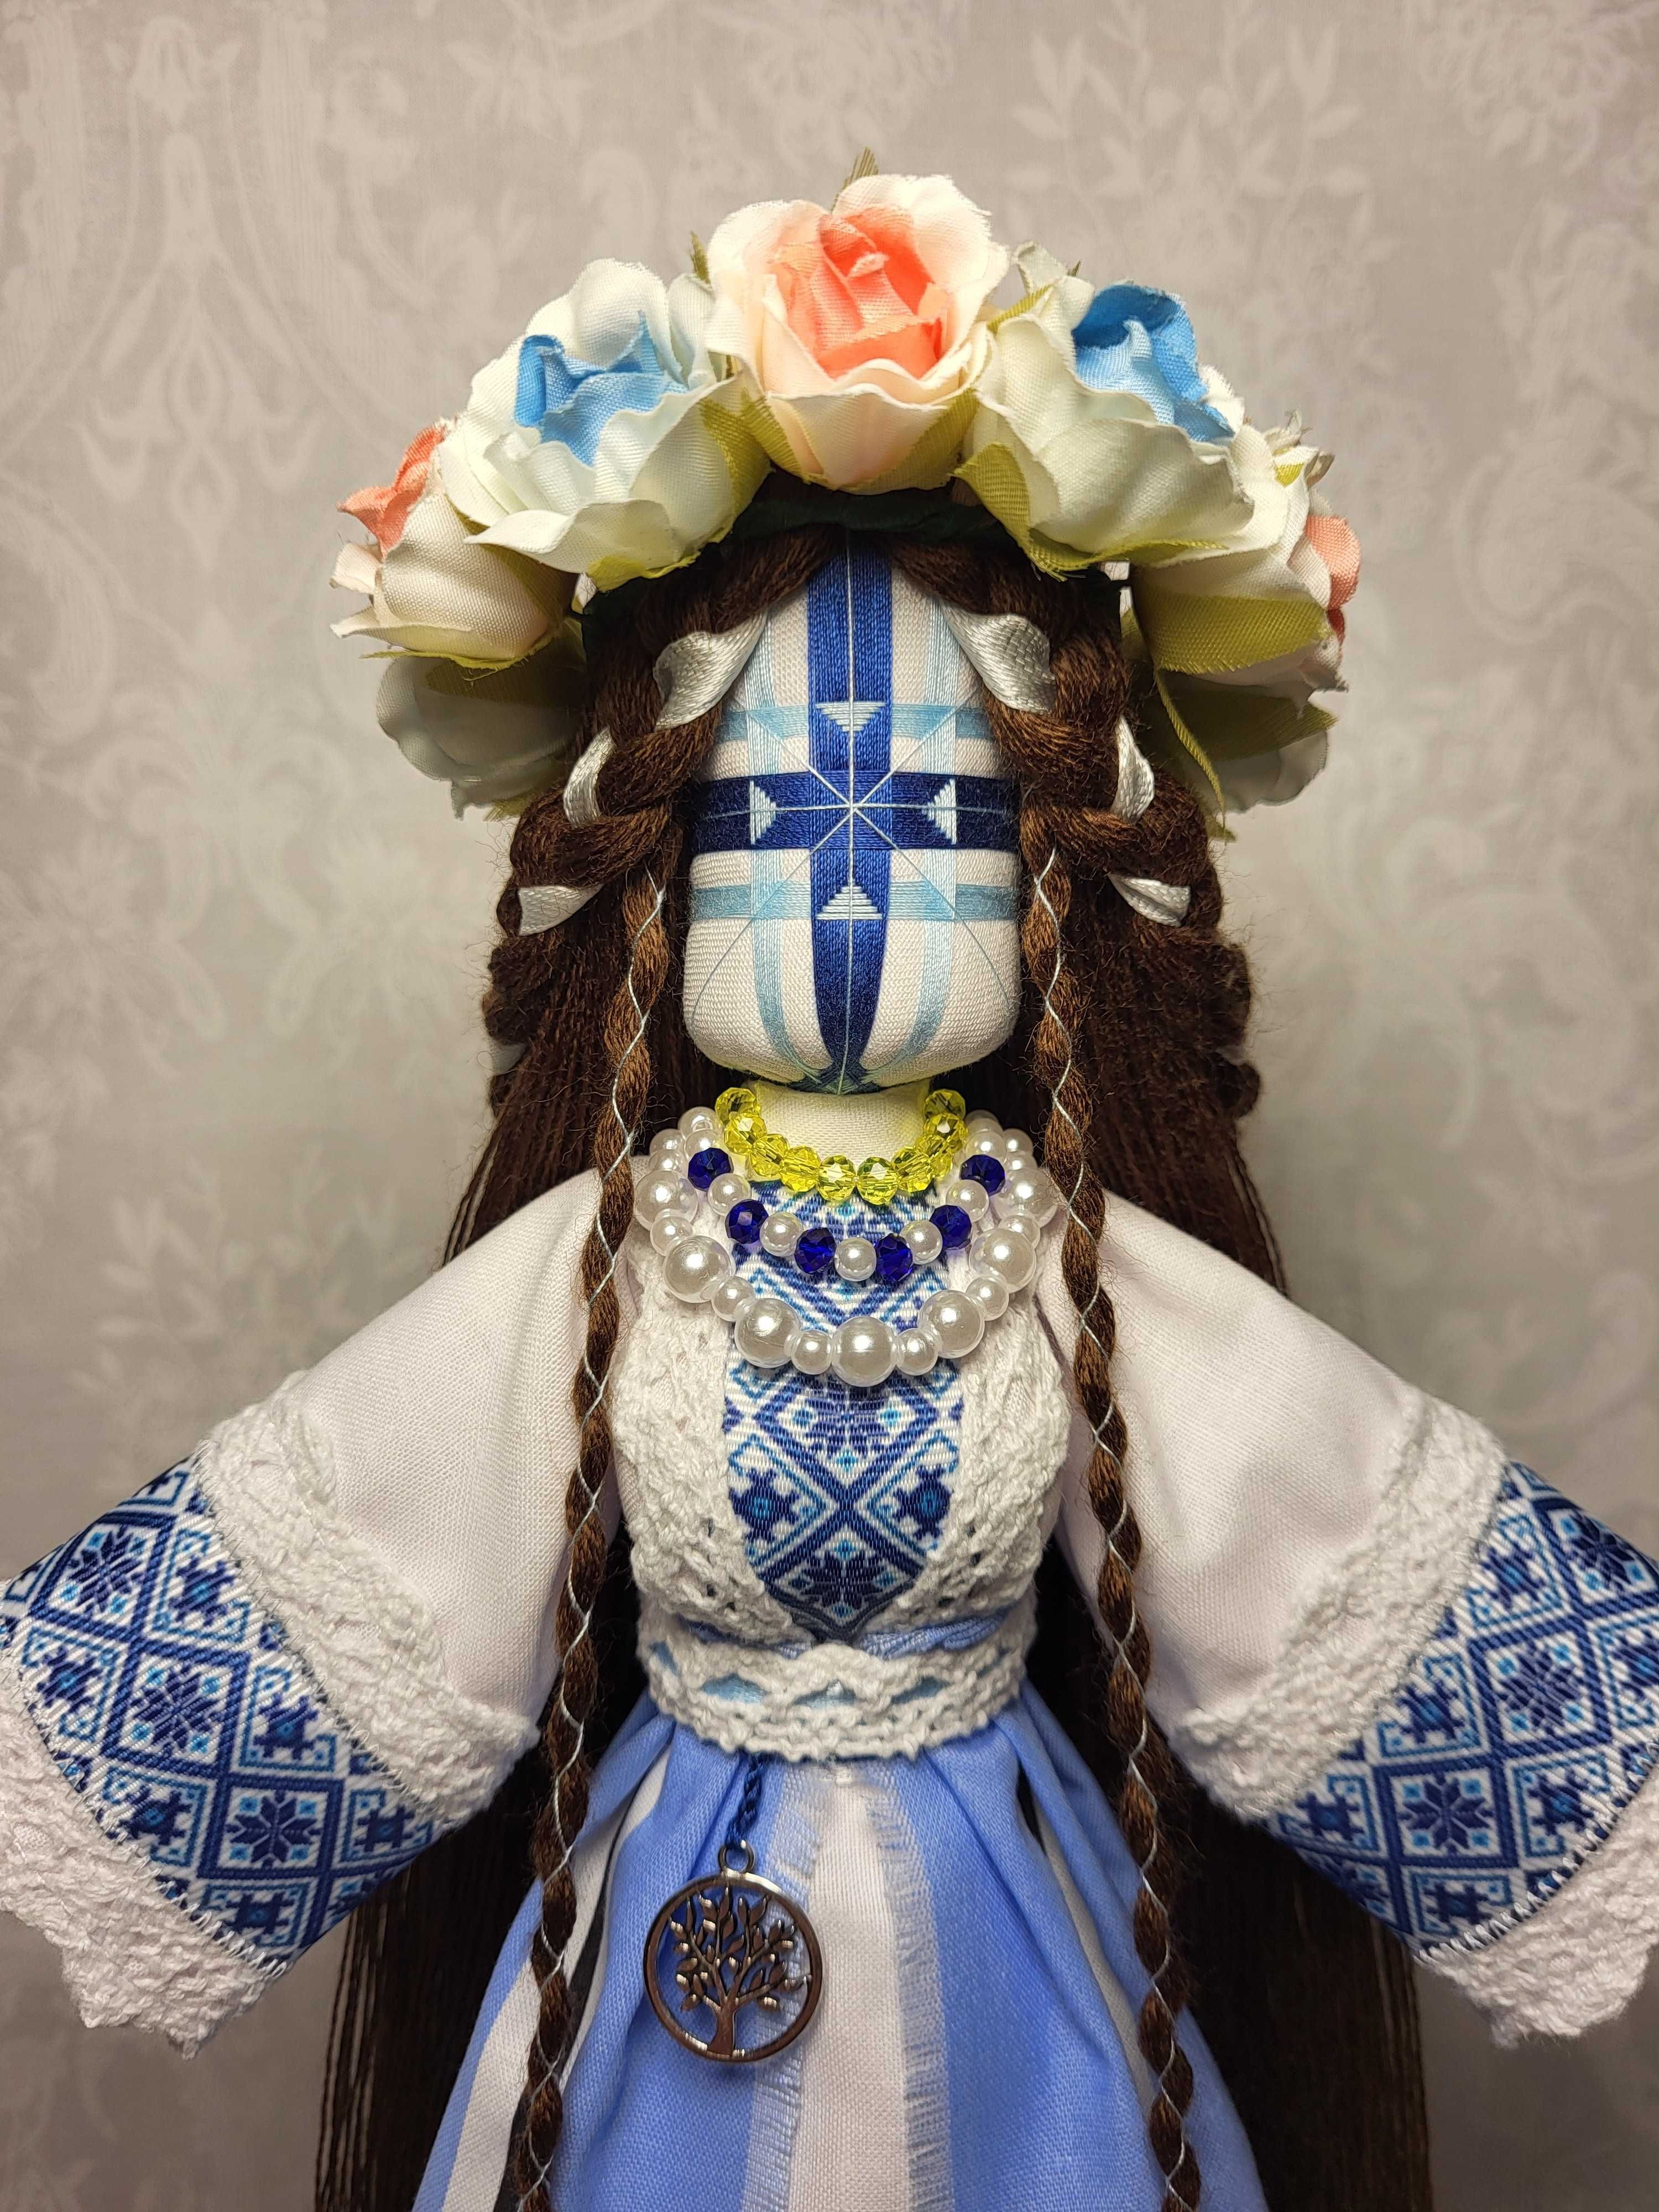 МОТАНКА АВТОРСЬКА, сучасна текстильна лялька, оберіг, ручна робота укр